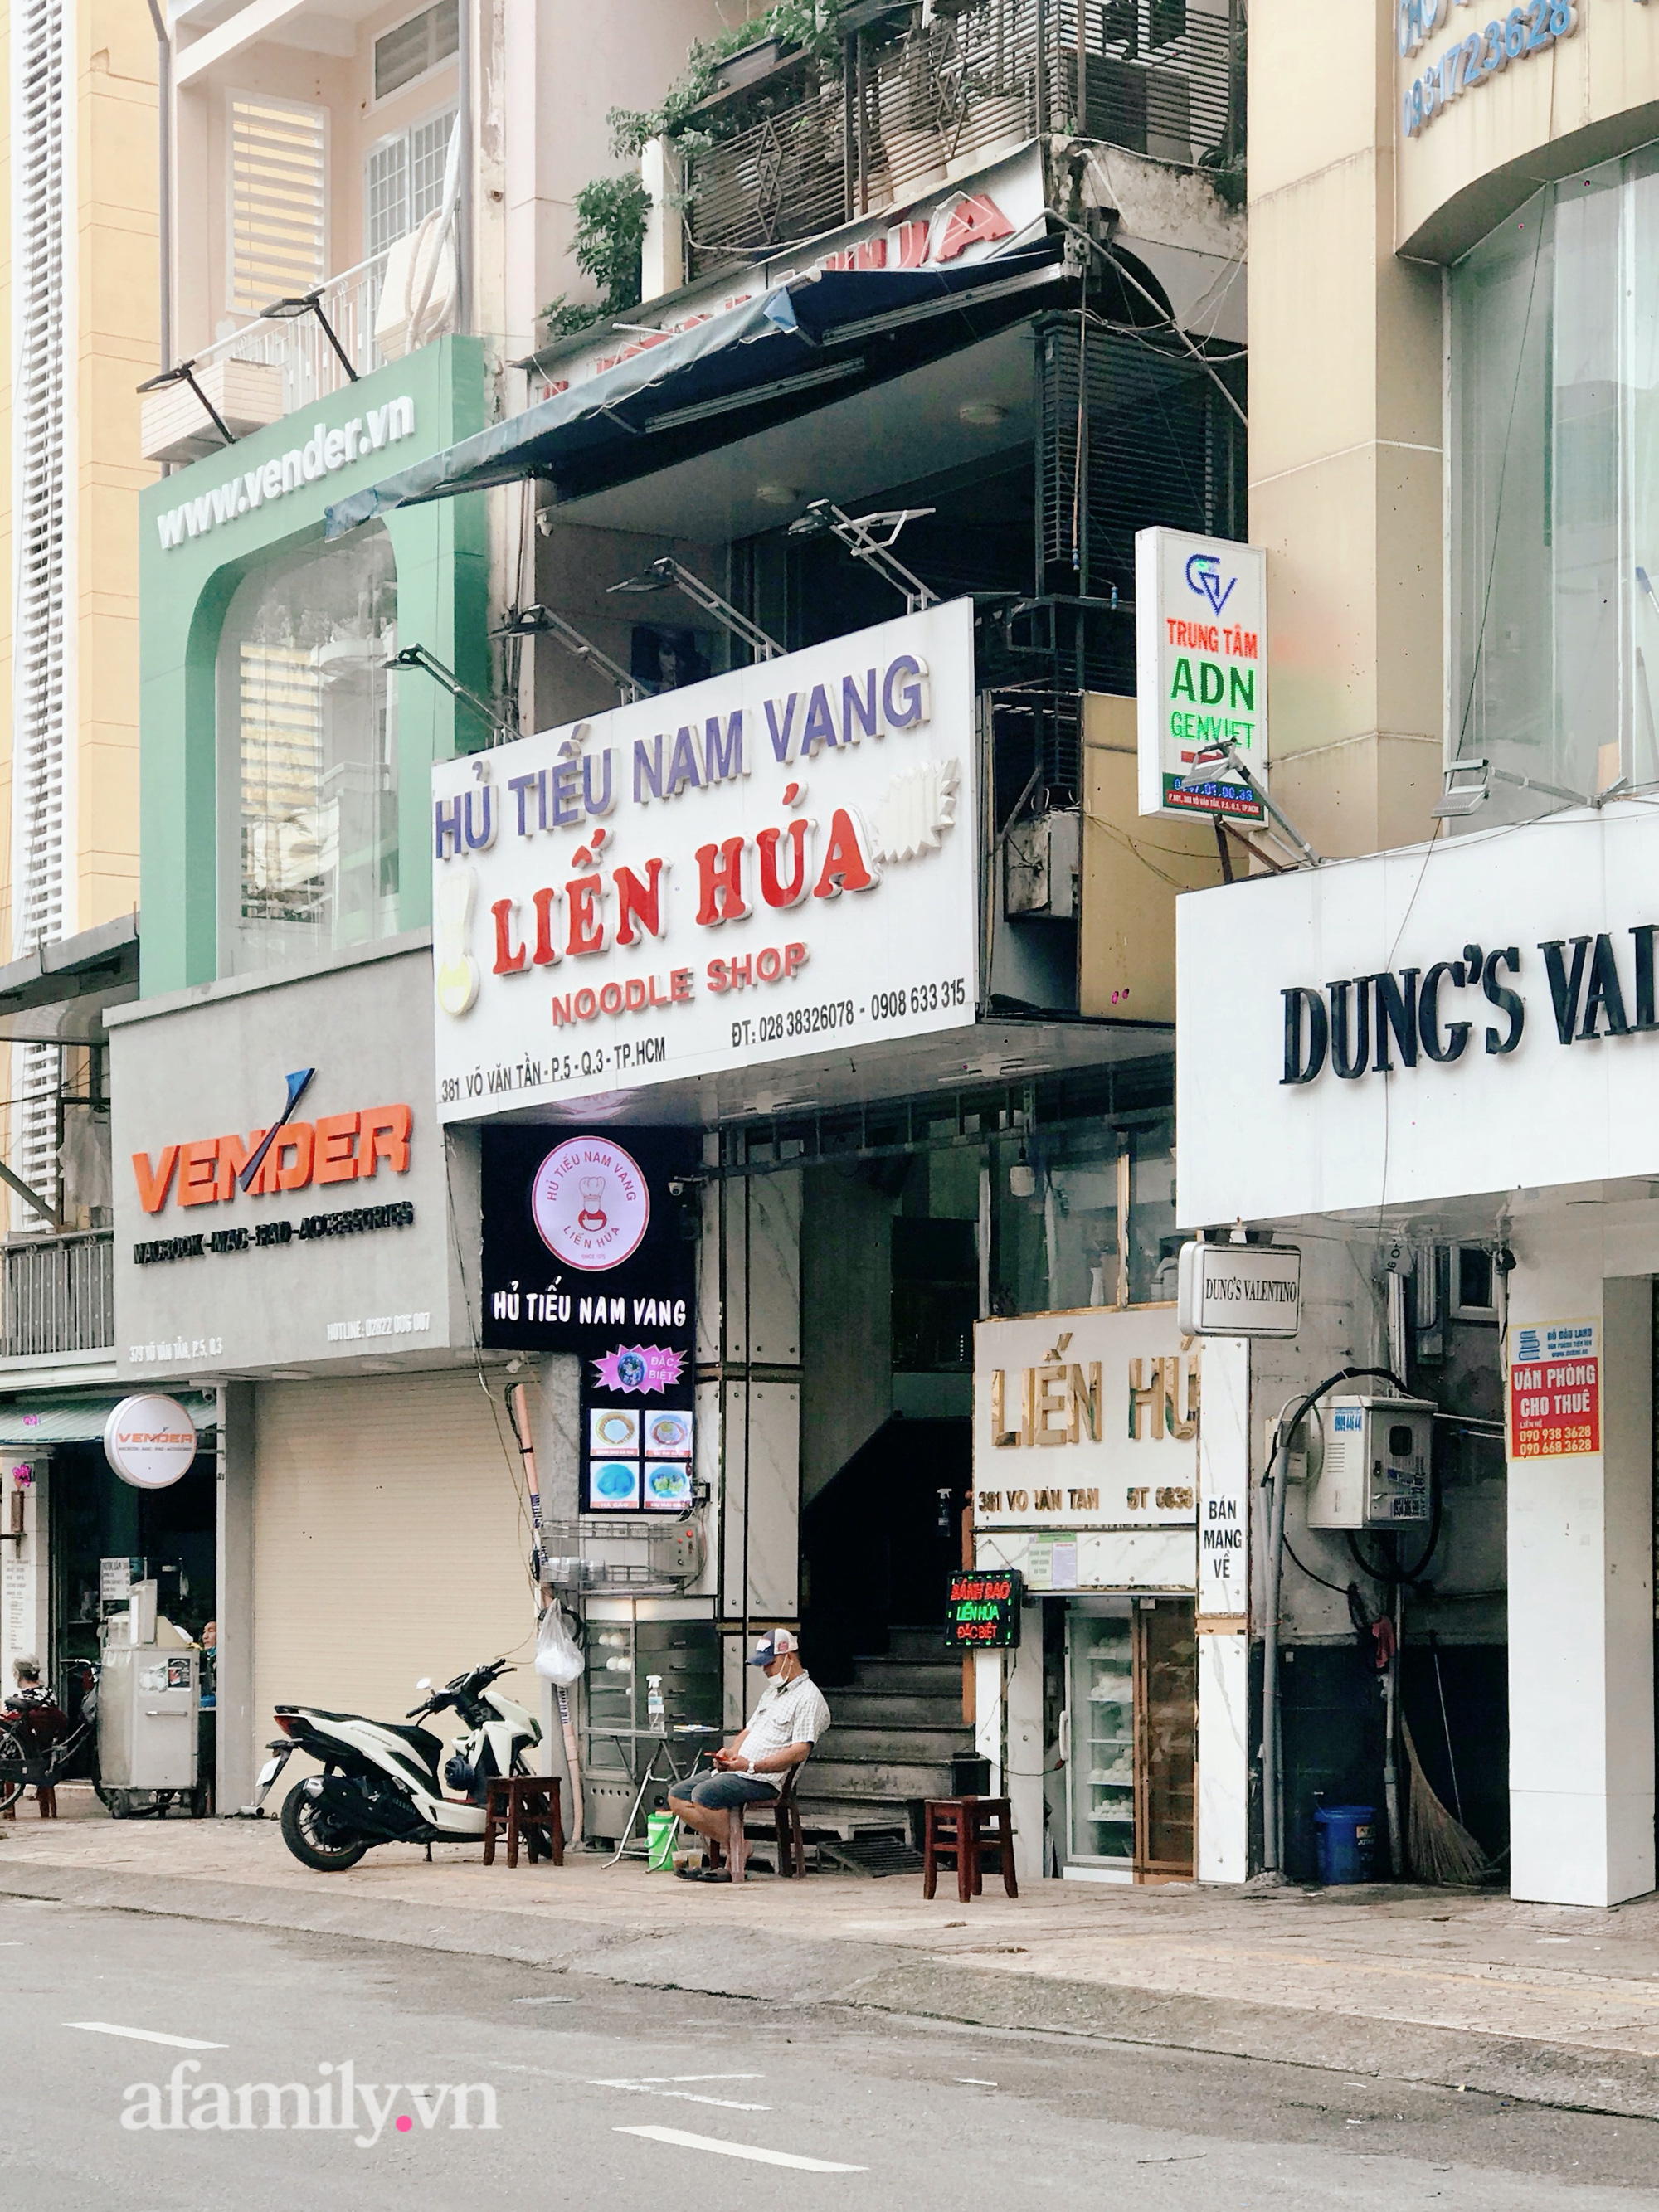 Dạo một vòng Sài Gòn ngày 25/10, dịch vụ ăn uống tại chỗ mở cửa với 6 tiêu chí mới khiến nhiều chủ quán phấn khởi  - Ảnh 5.